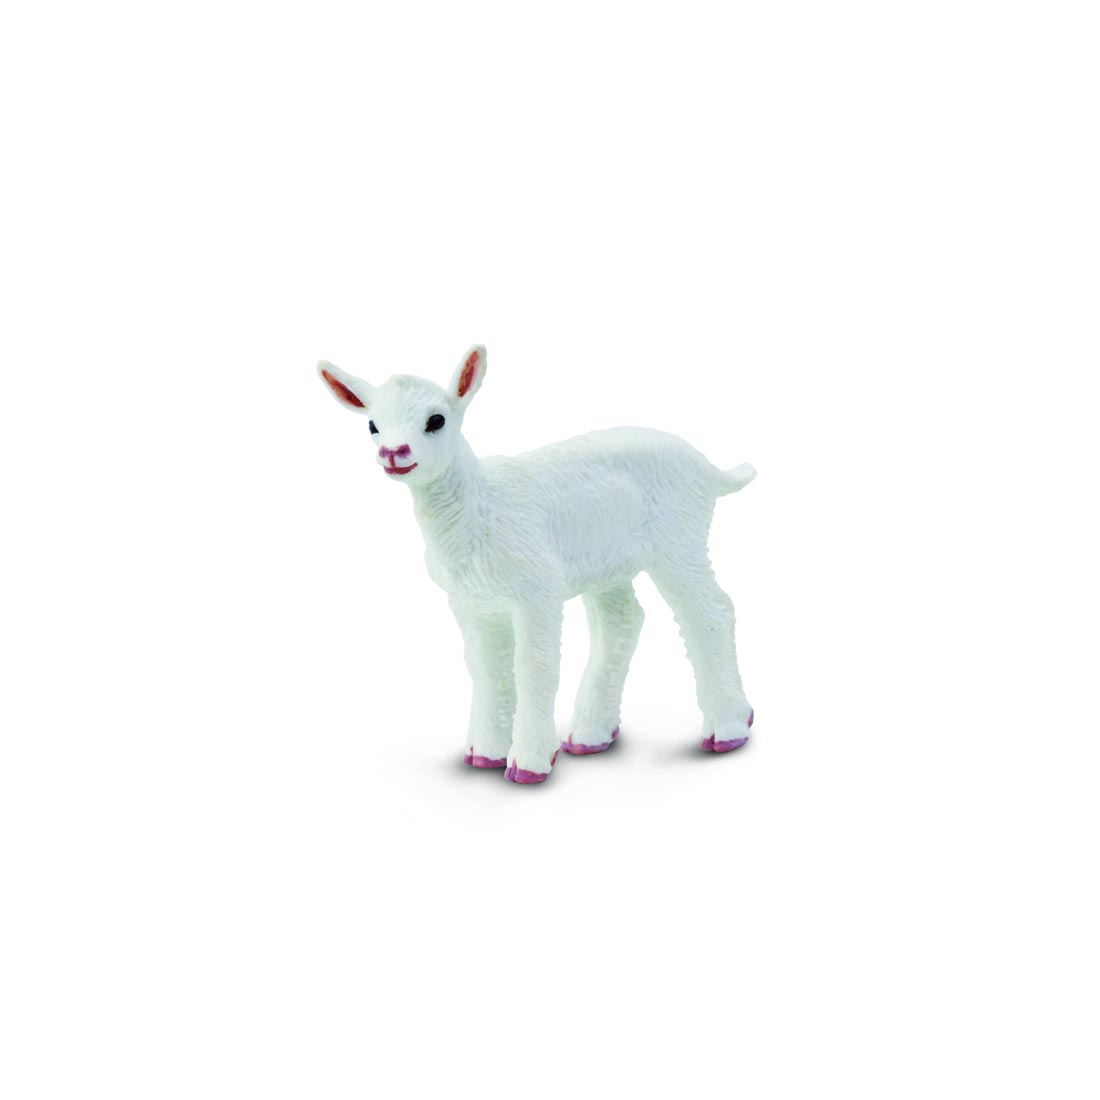 Goat Kid Figurine